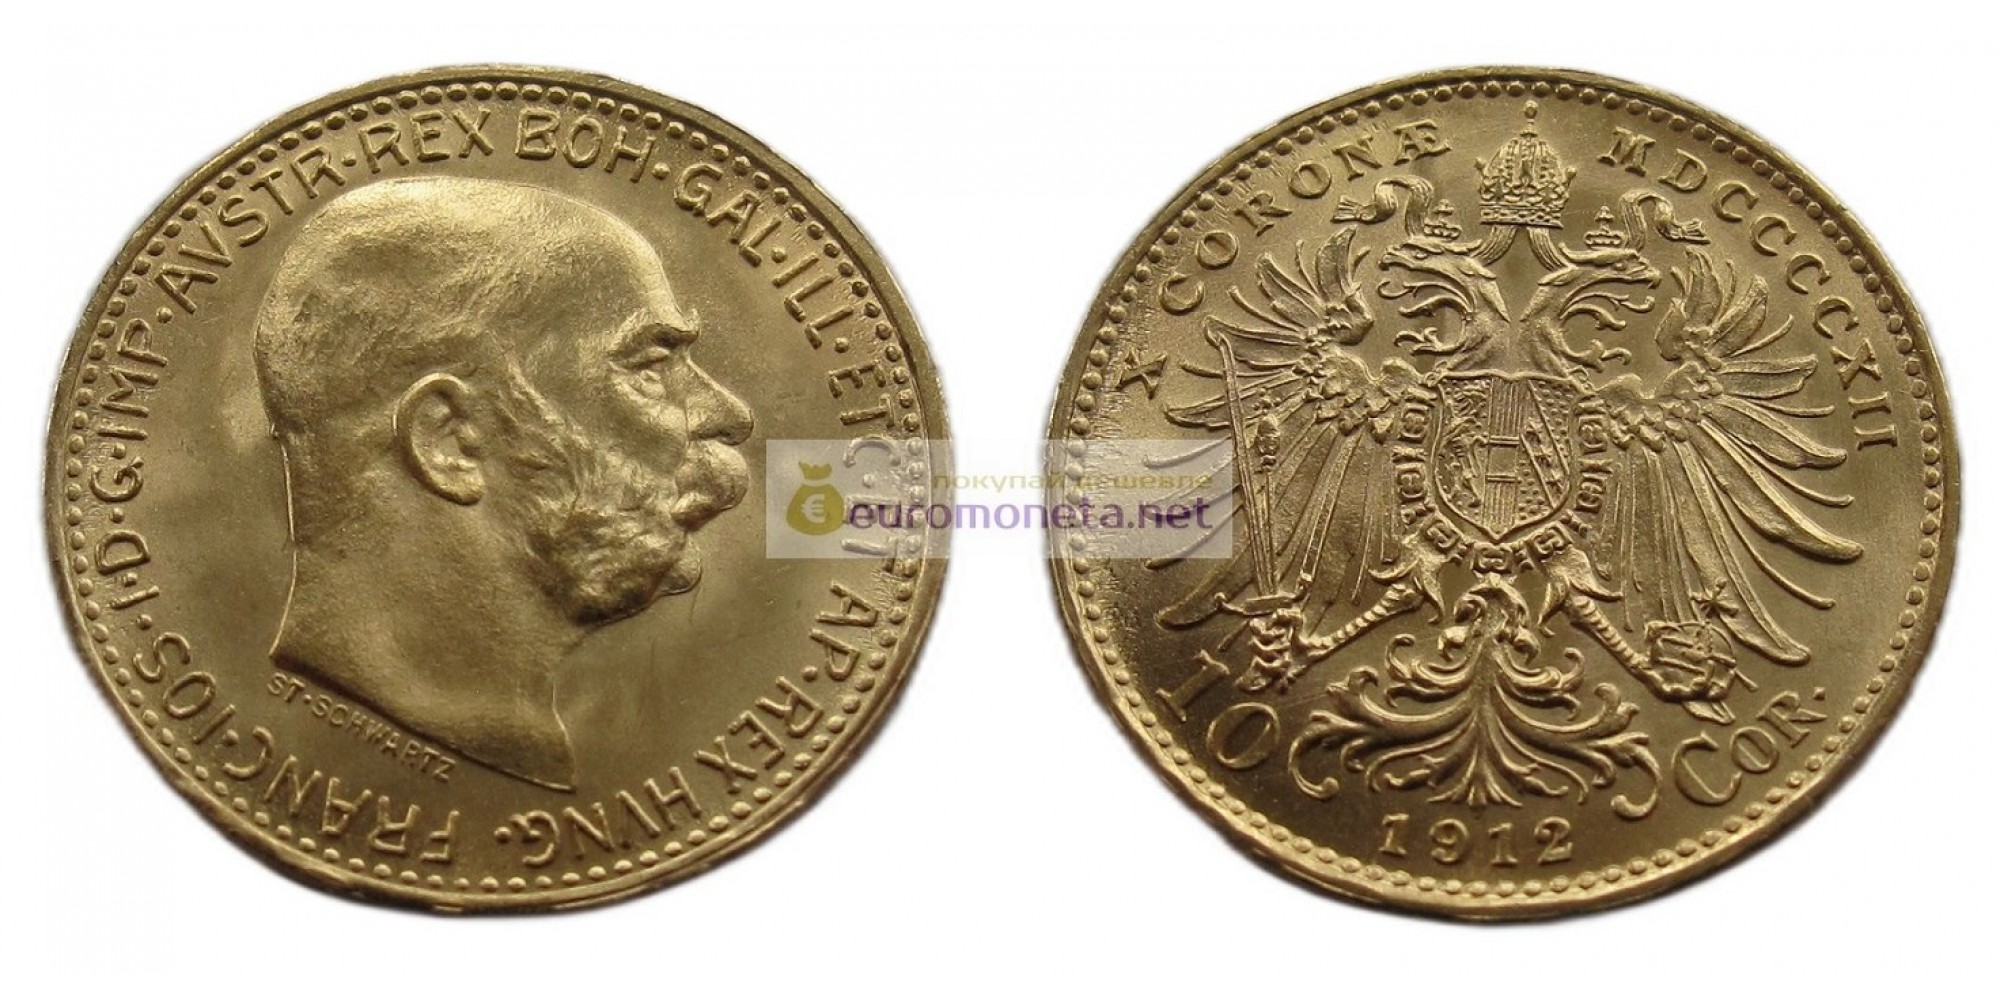 Австрия 10 крон 1912 год. Франц Иосиф I. Золото. АЦ / UNC